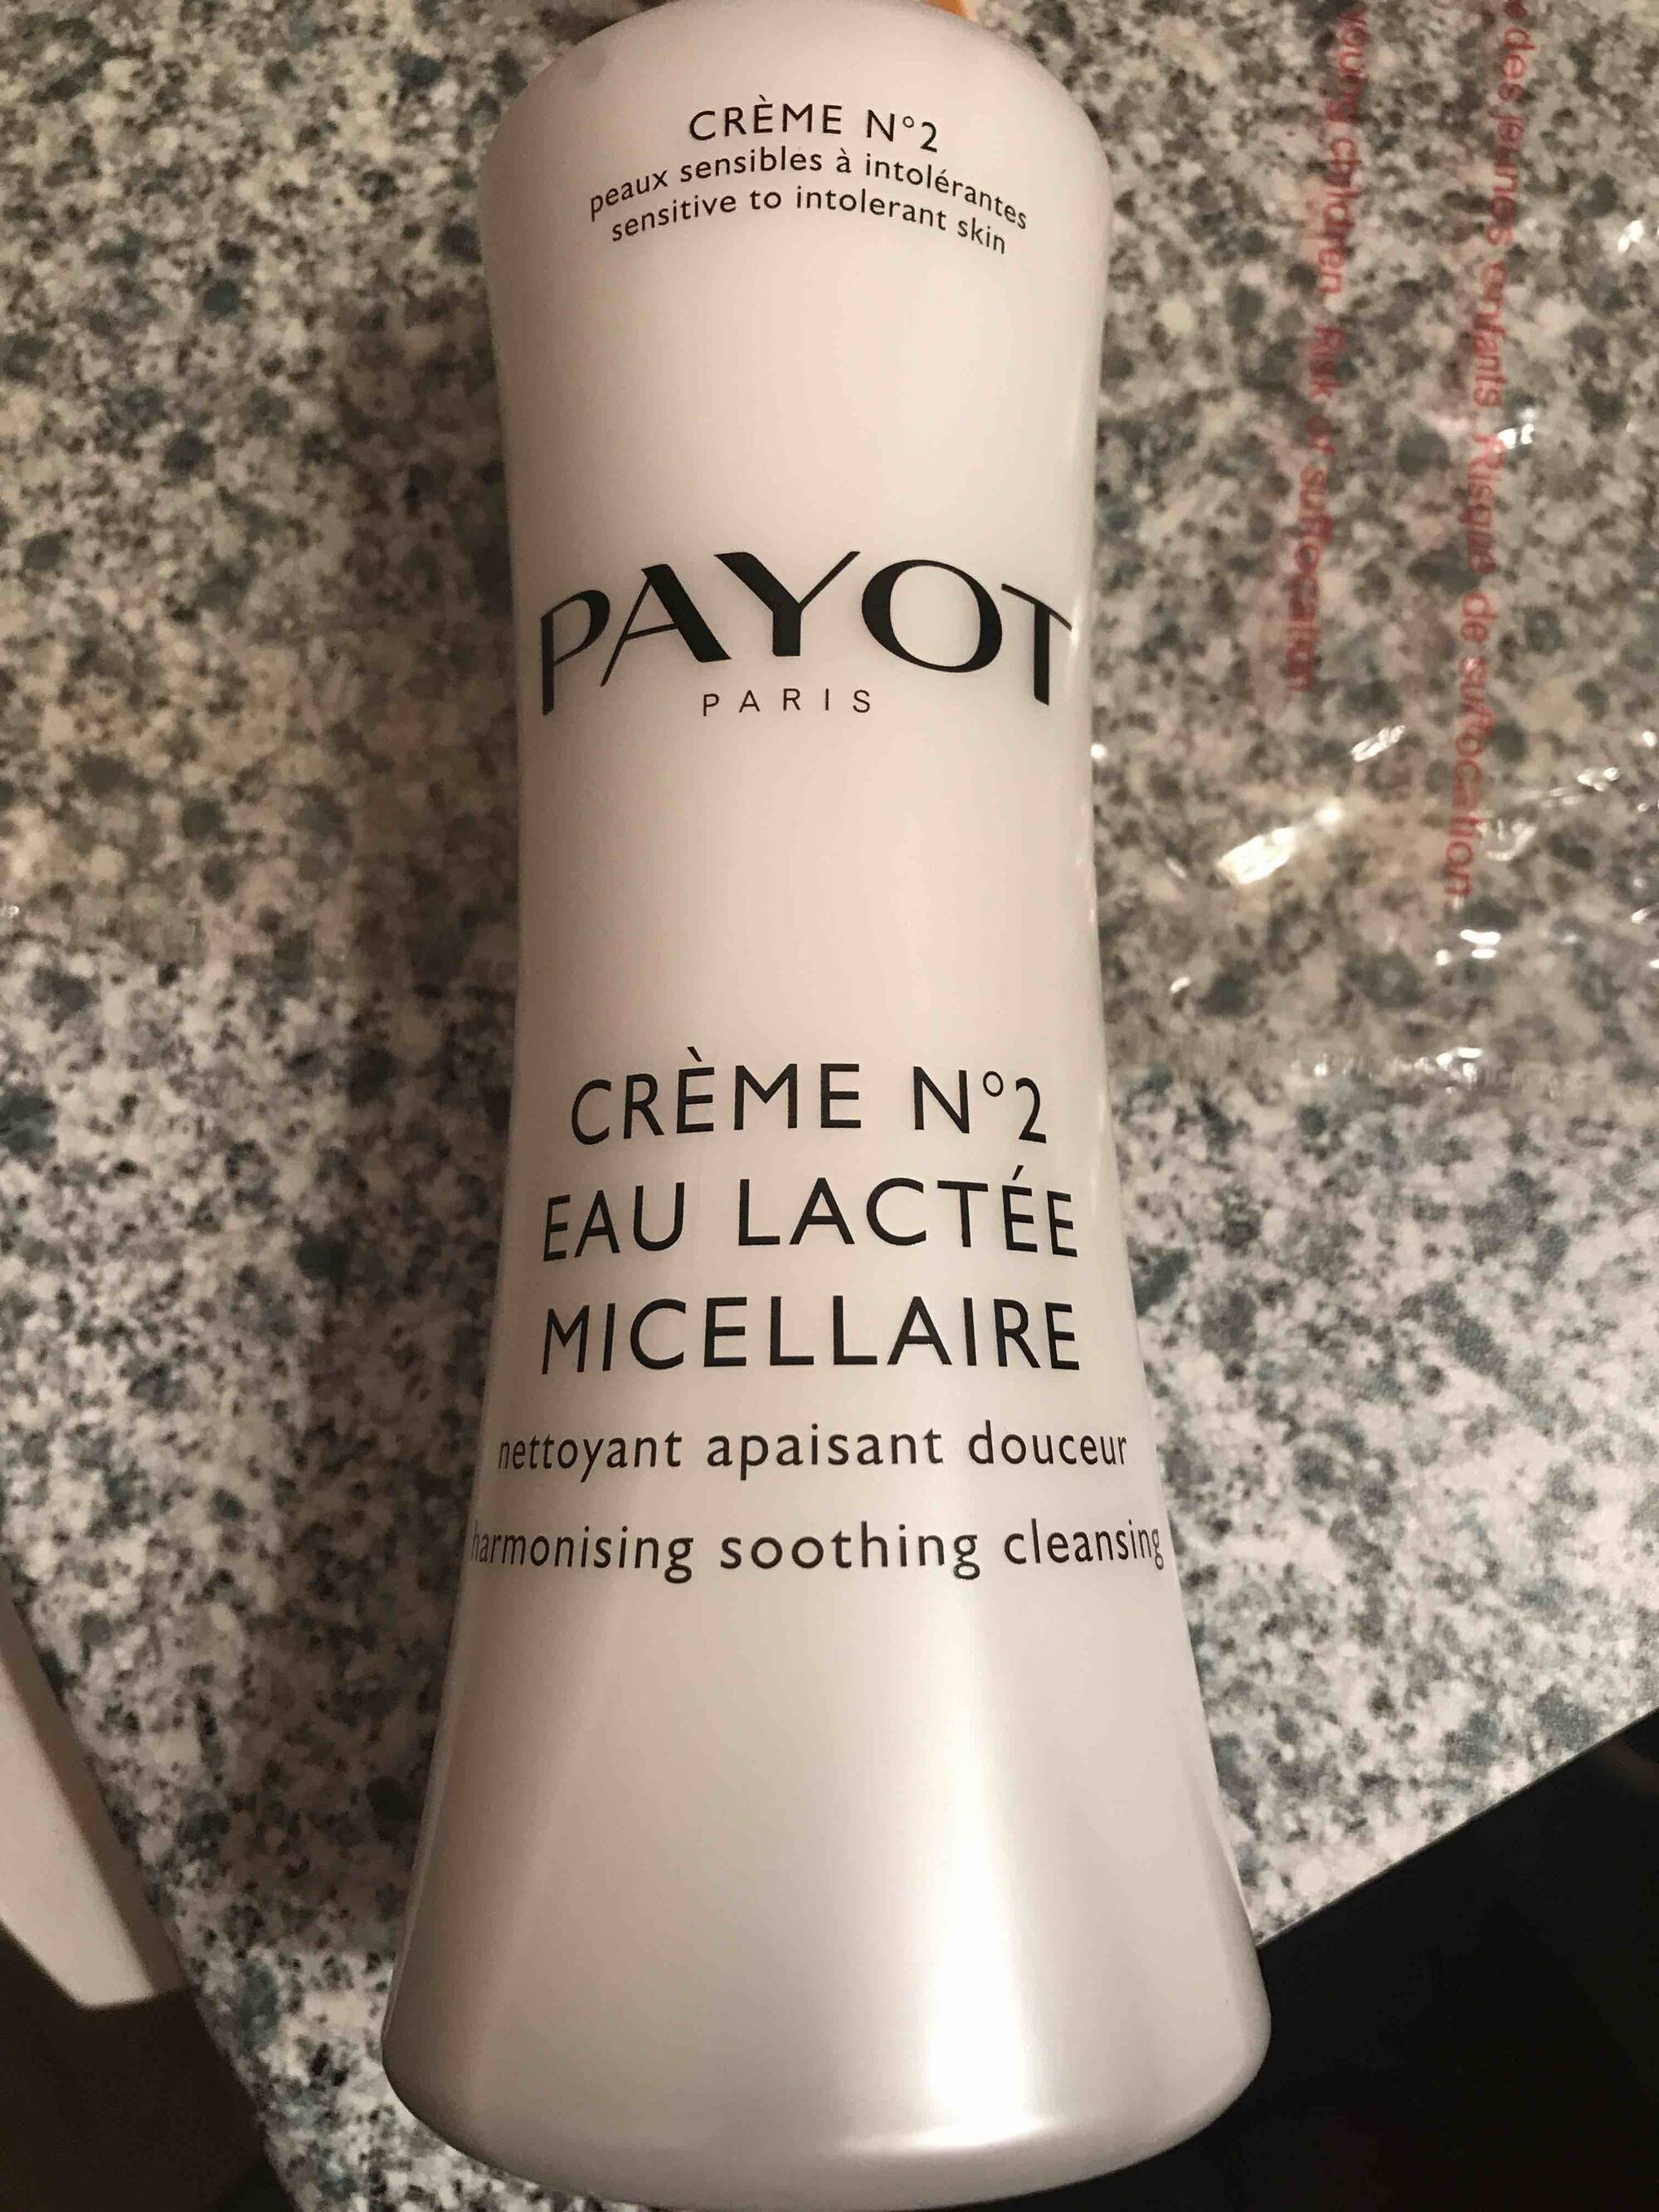 PAYOT - Crème n° 2 - Eau lactée micellaire